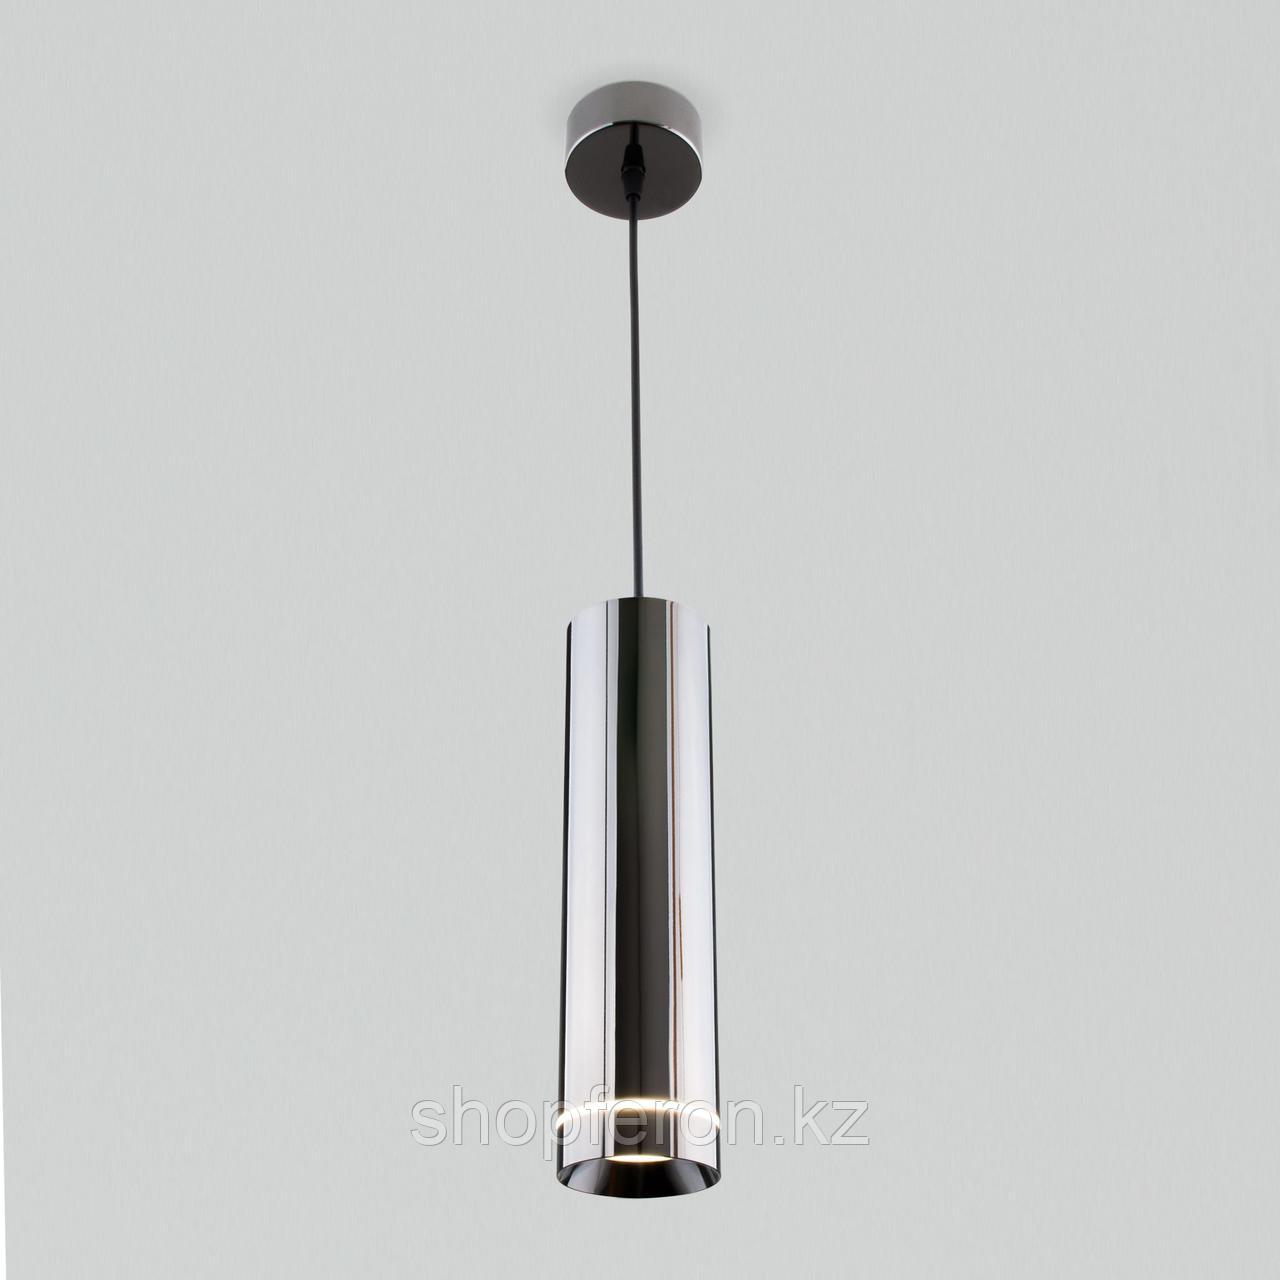 DLR023 12W 4200K / Подвесной светодиодный светильник Черный жемчуг